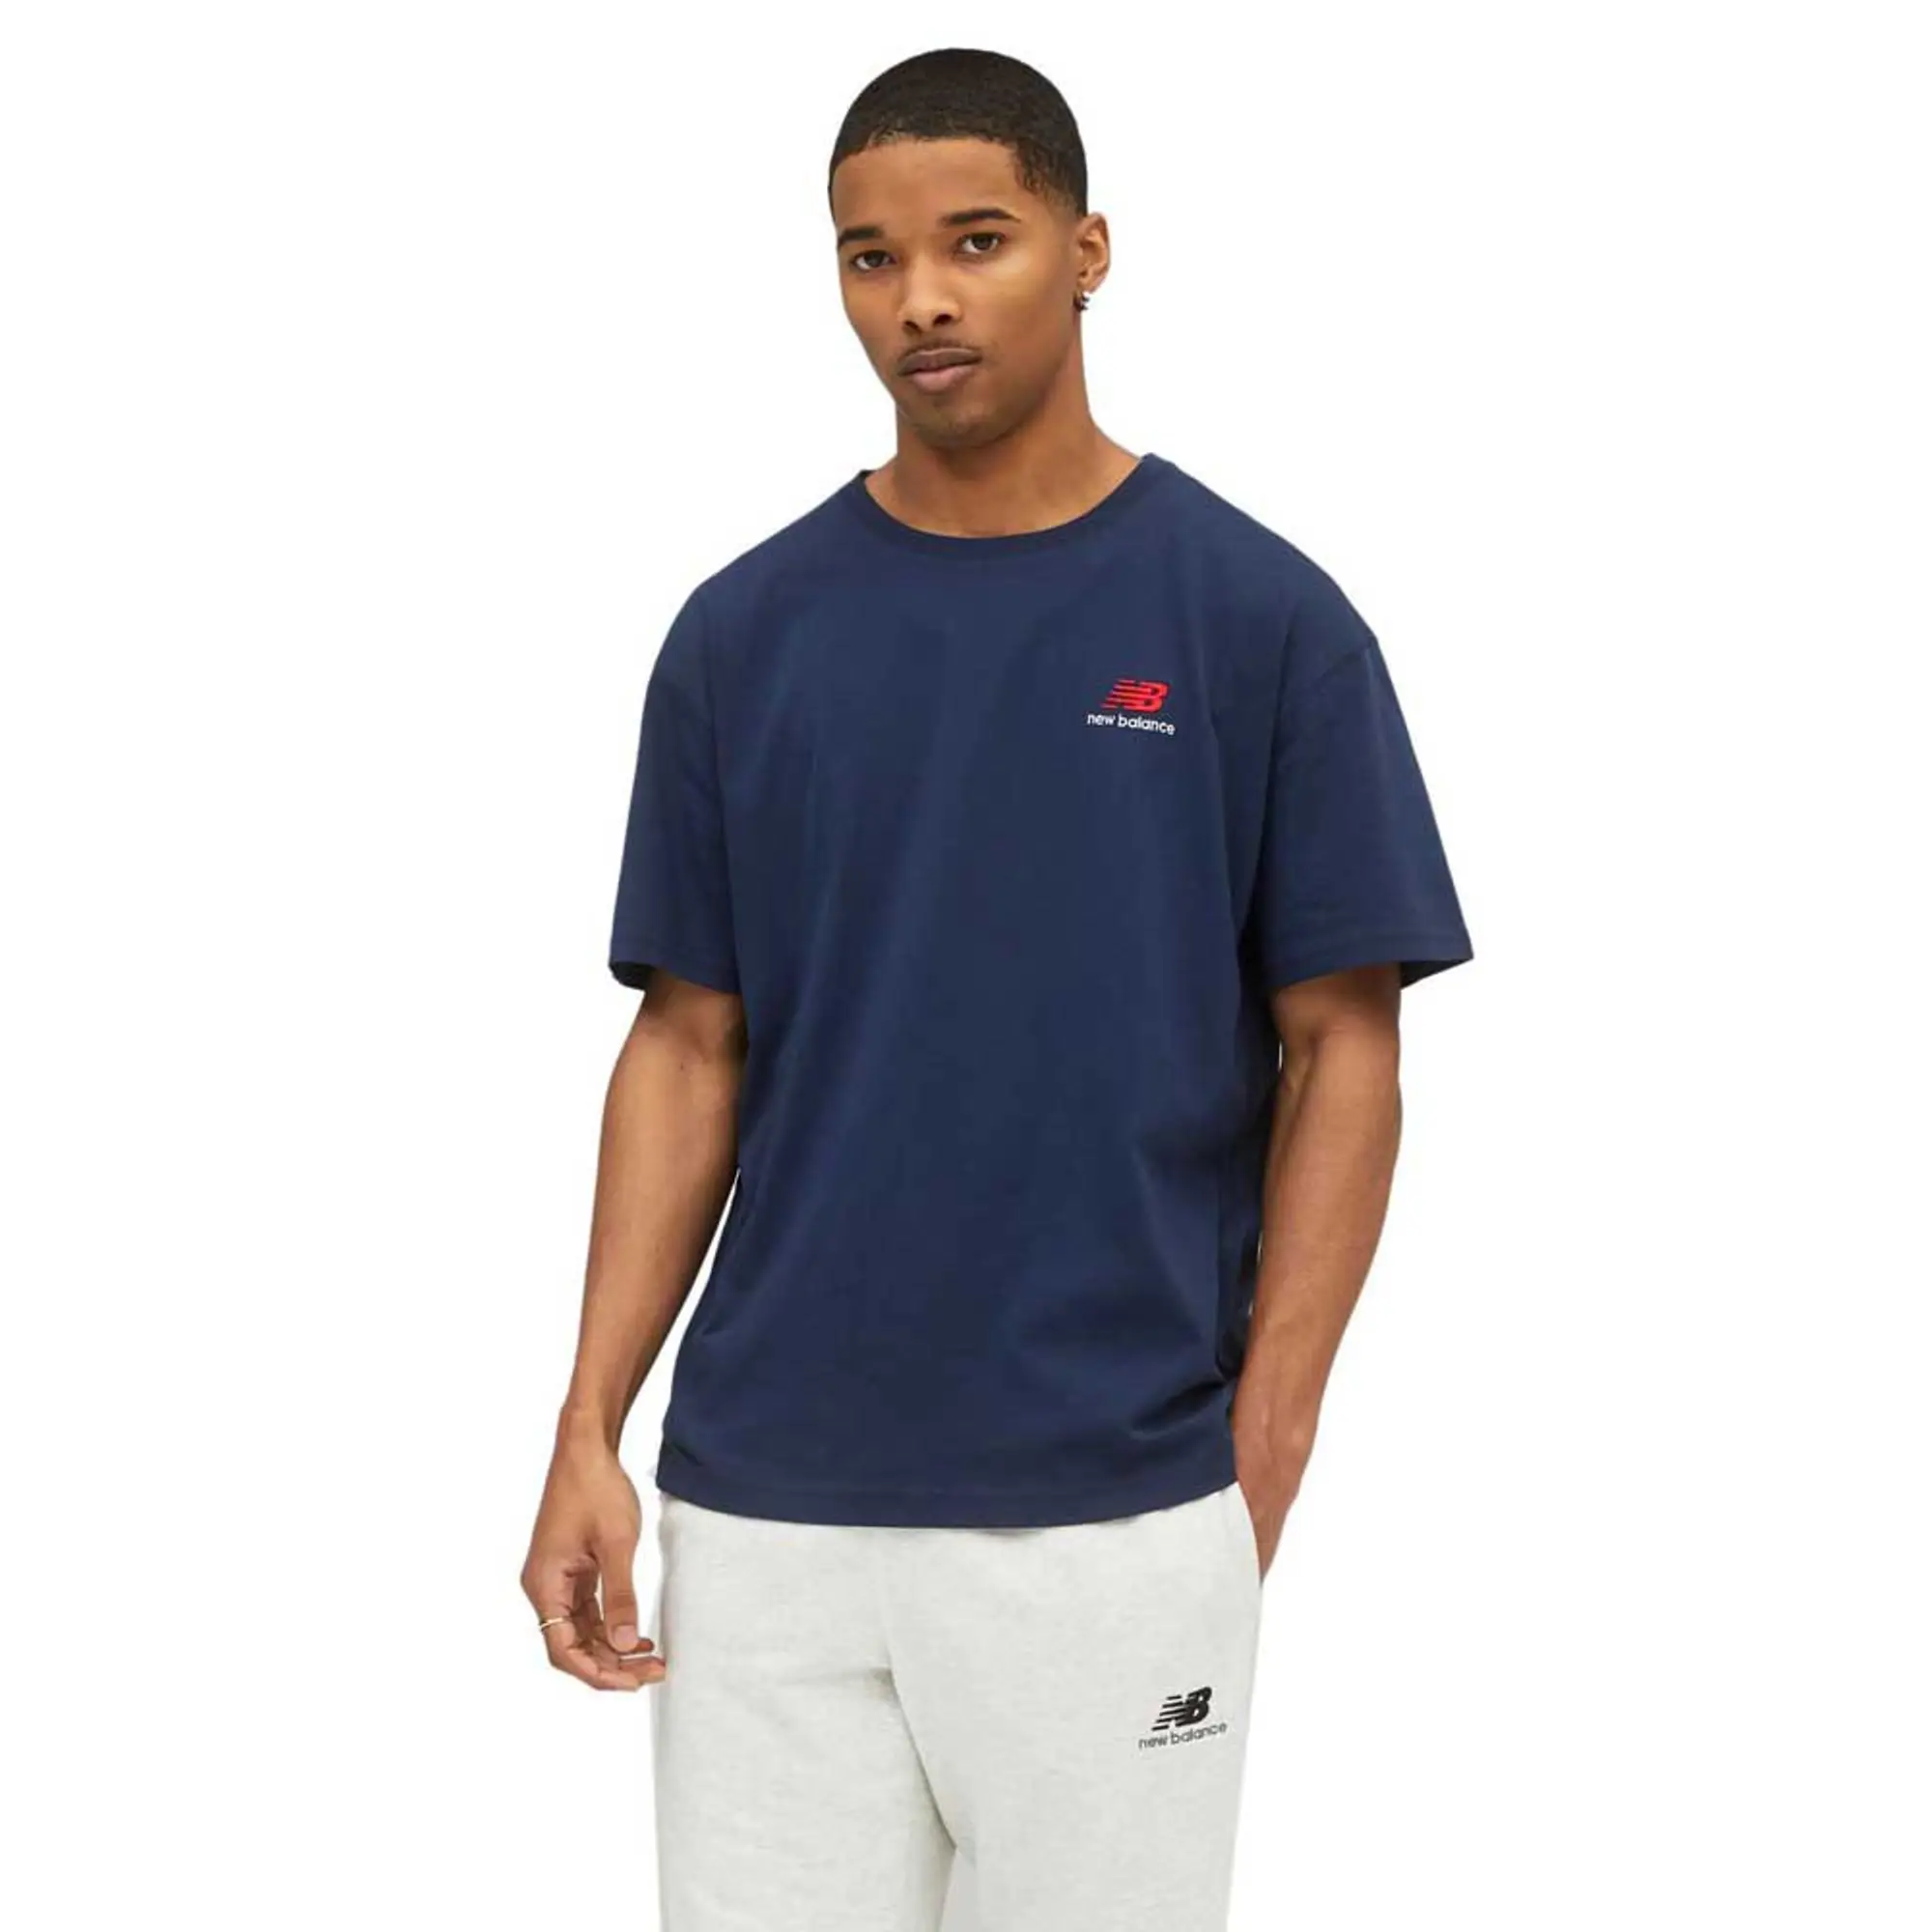 New Balance Uni-ssentials Cotton Short Sleeve T-shirt  - Blue